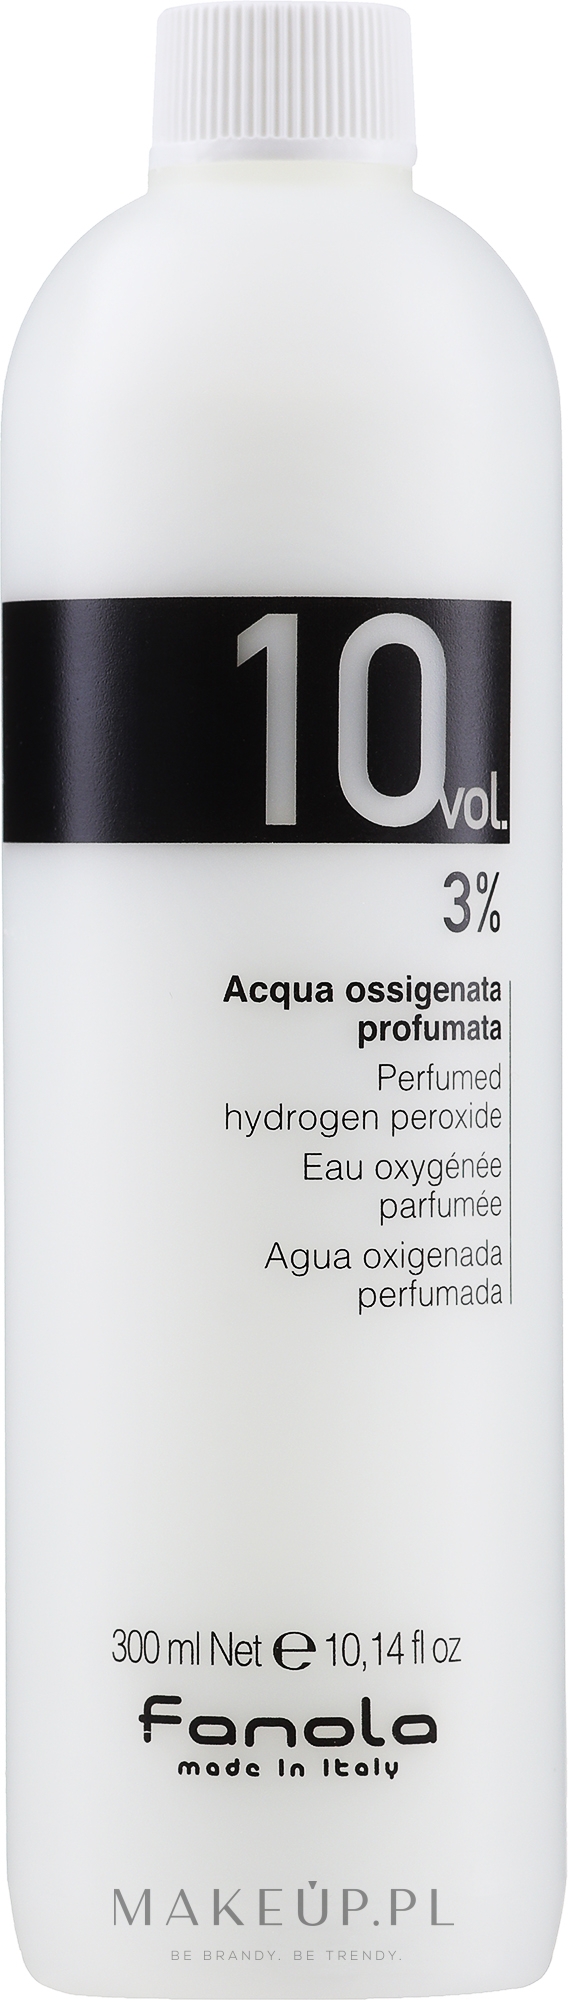 Emulsja utleniająca do wszystkich rodzajów włosów - Fanola Perfumed Hydrogen Peroxide Hair Oxidant 10vol 3% — Zdjęcie 300 ml